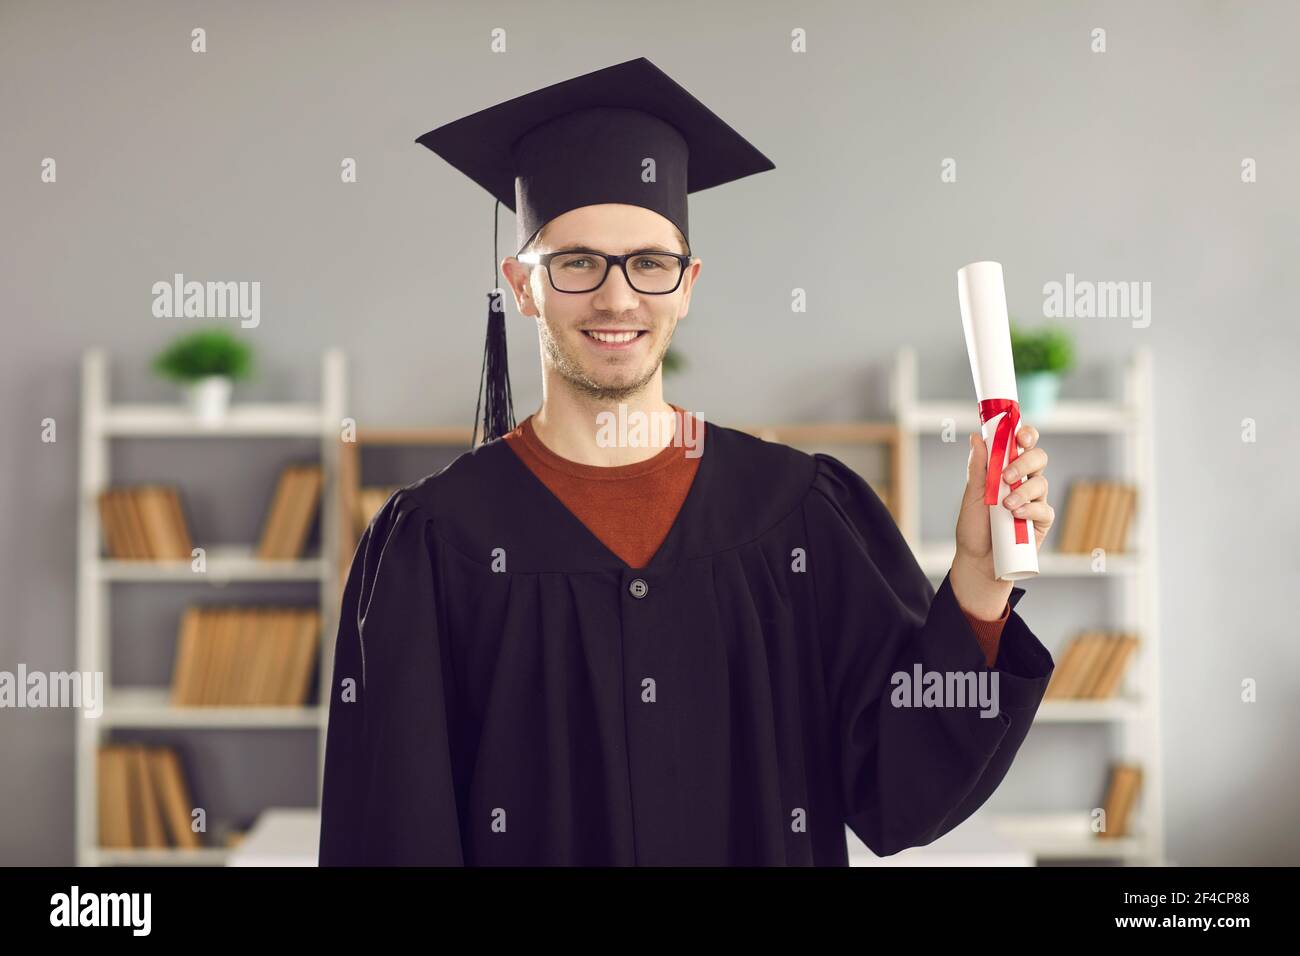 Portrait eines männlichen Studenten in Uniform mit Diplom in den Händen. Stockfoto